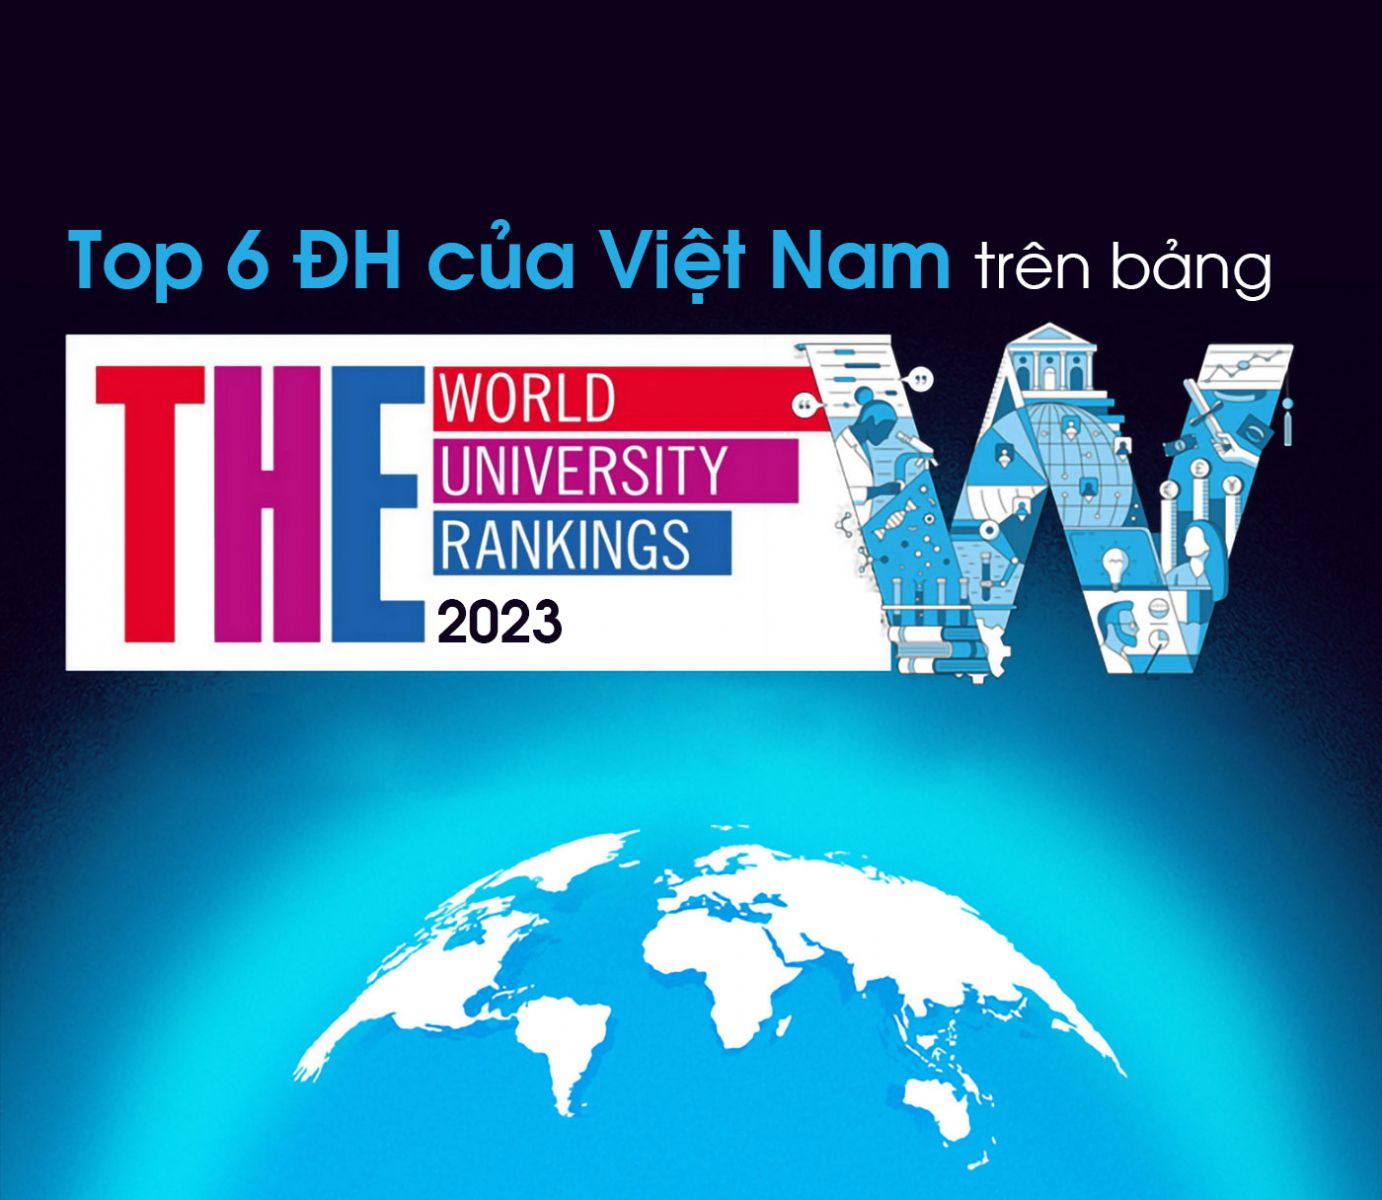 Top 6 ĐH của Việt Nam trên bảng Times Higher Education (THE) năm 2023 - Ảnh 1